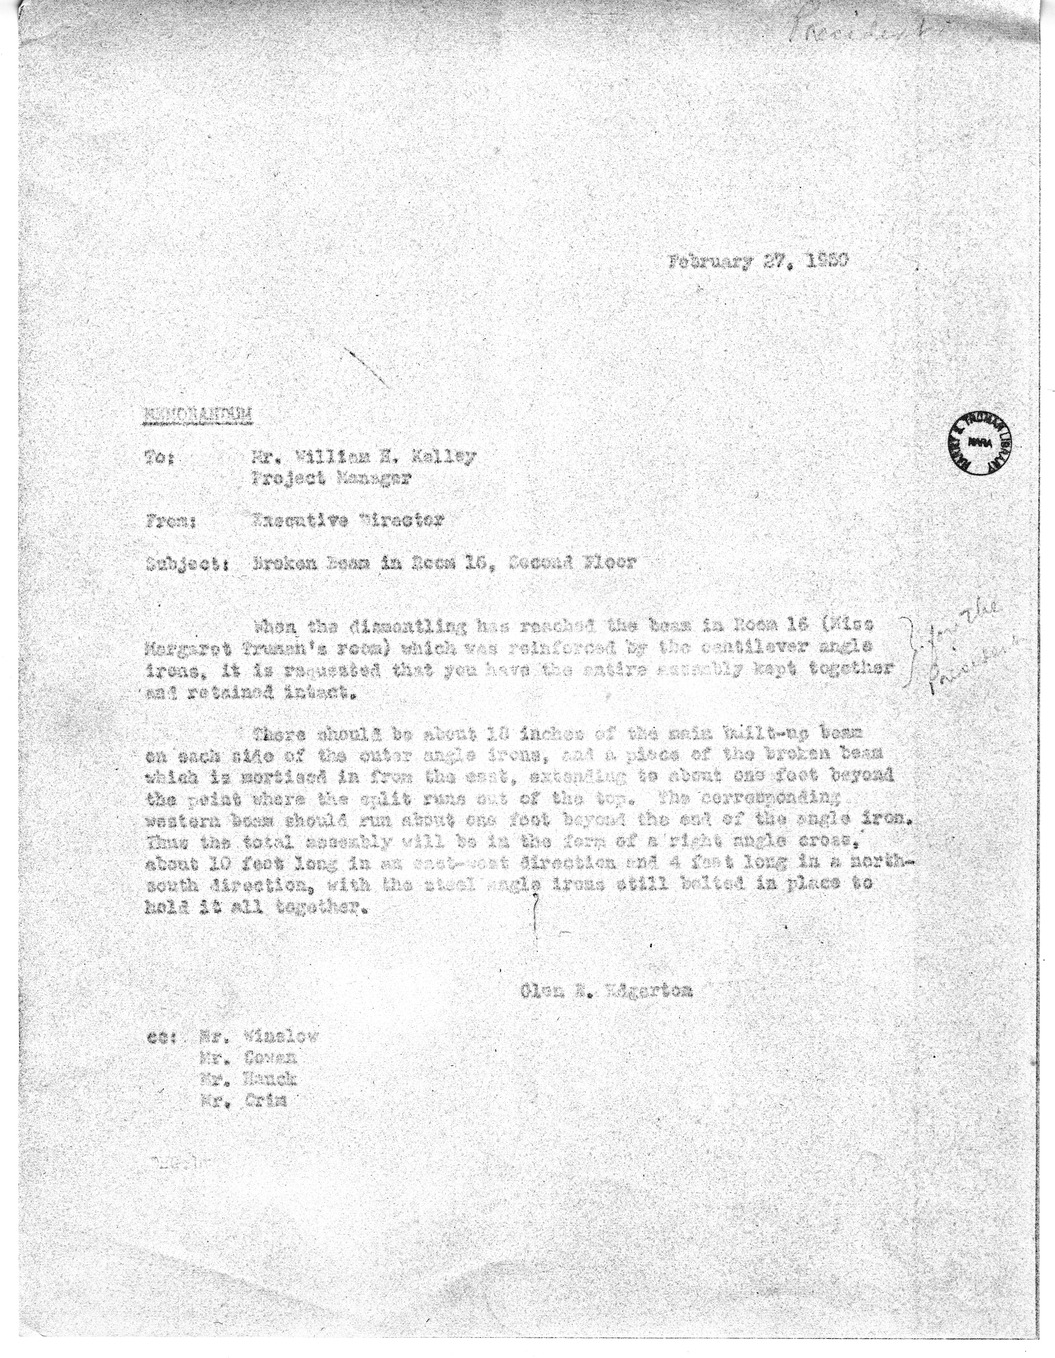 Memorandum from Major General Glen E. Edgerton to William E. Kelley